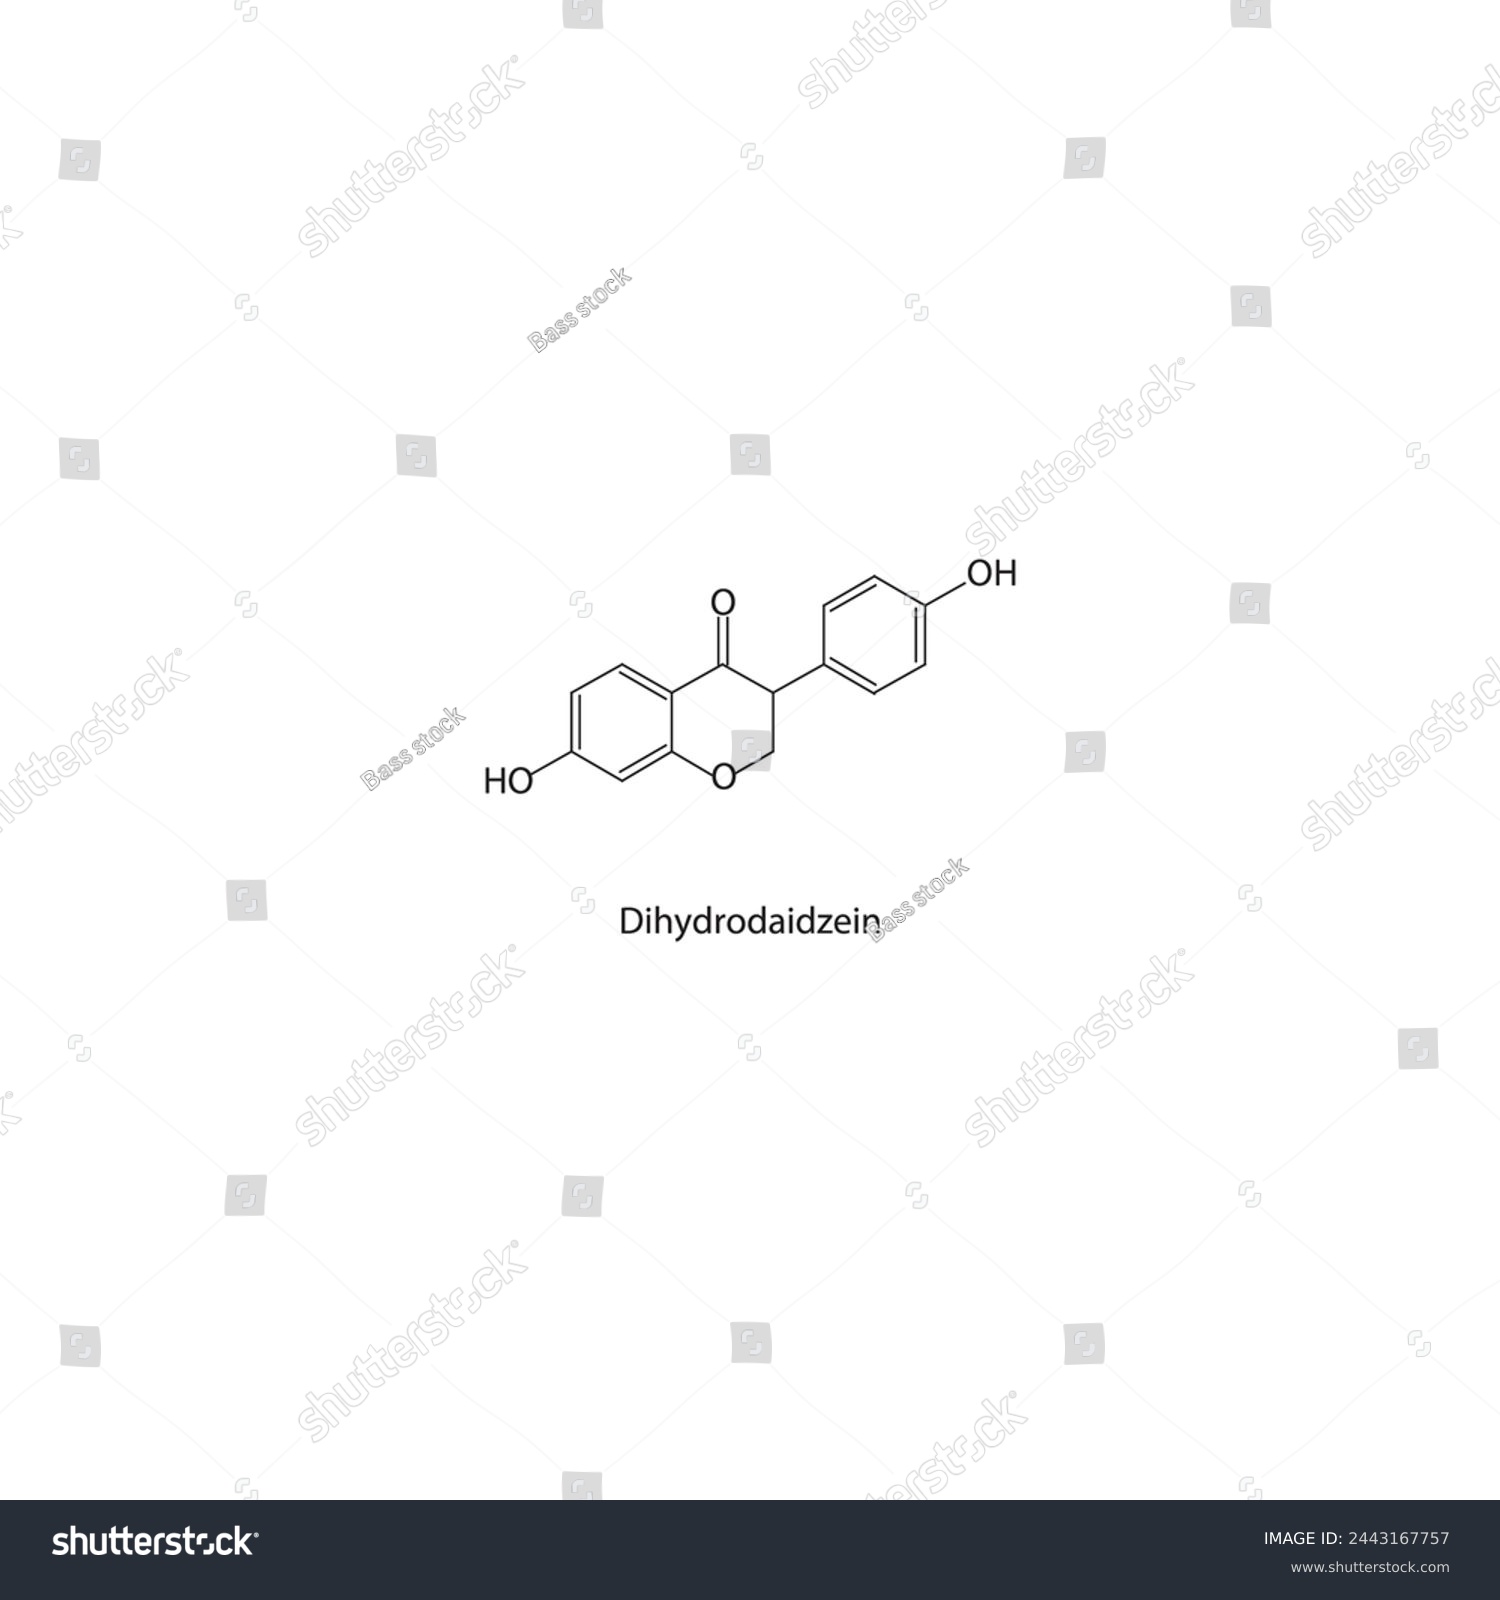 SVG of Dihydrodaidzein skeletal structure diagram.Isoflavanone compound molecule scientific illustration on white background. svg